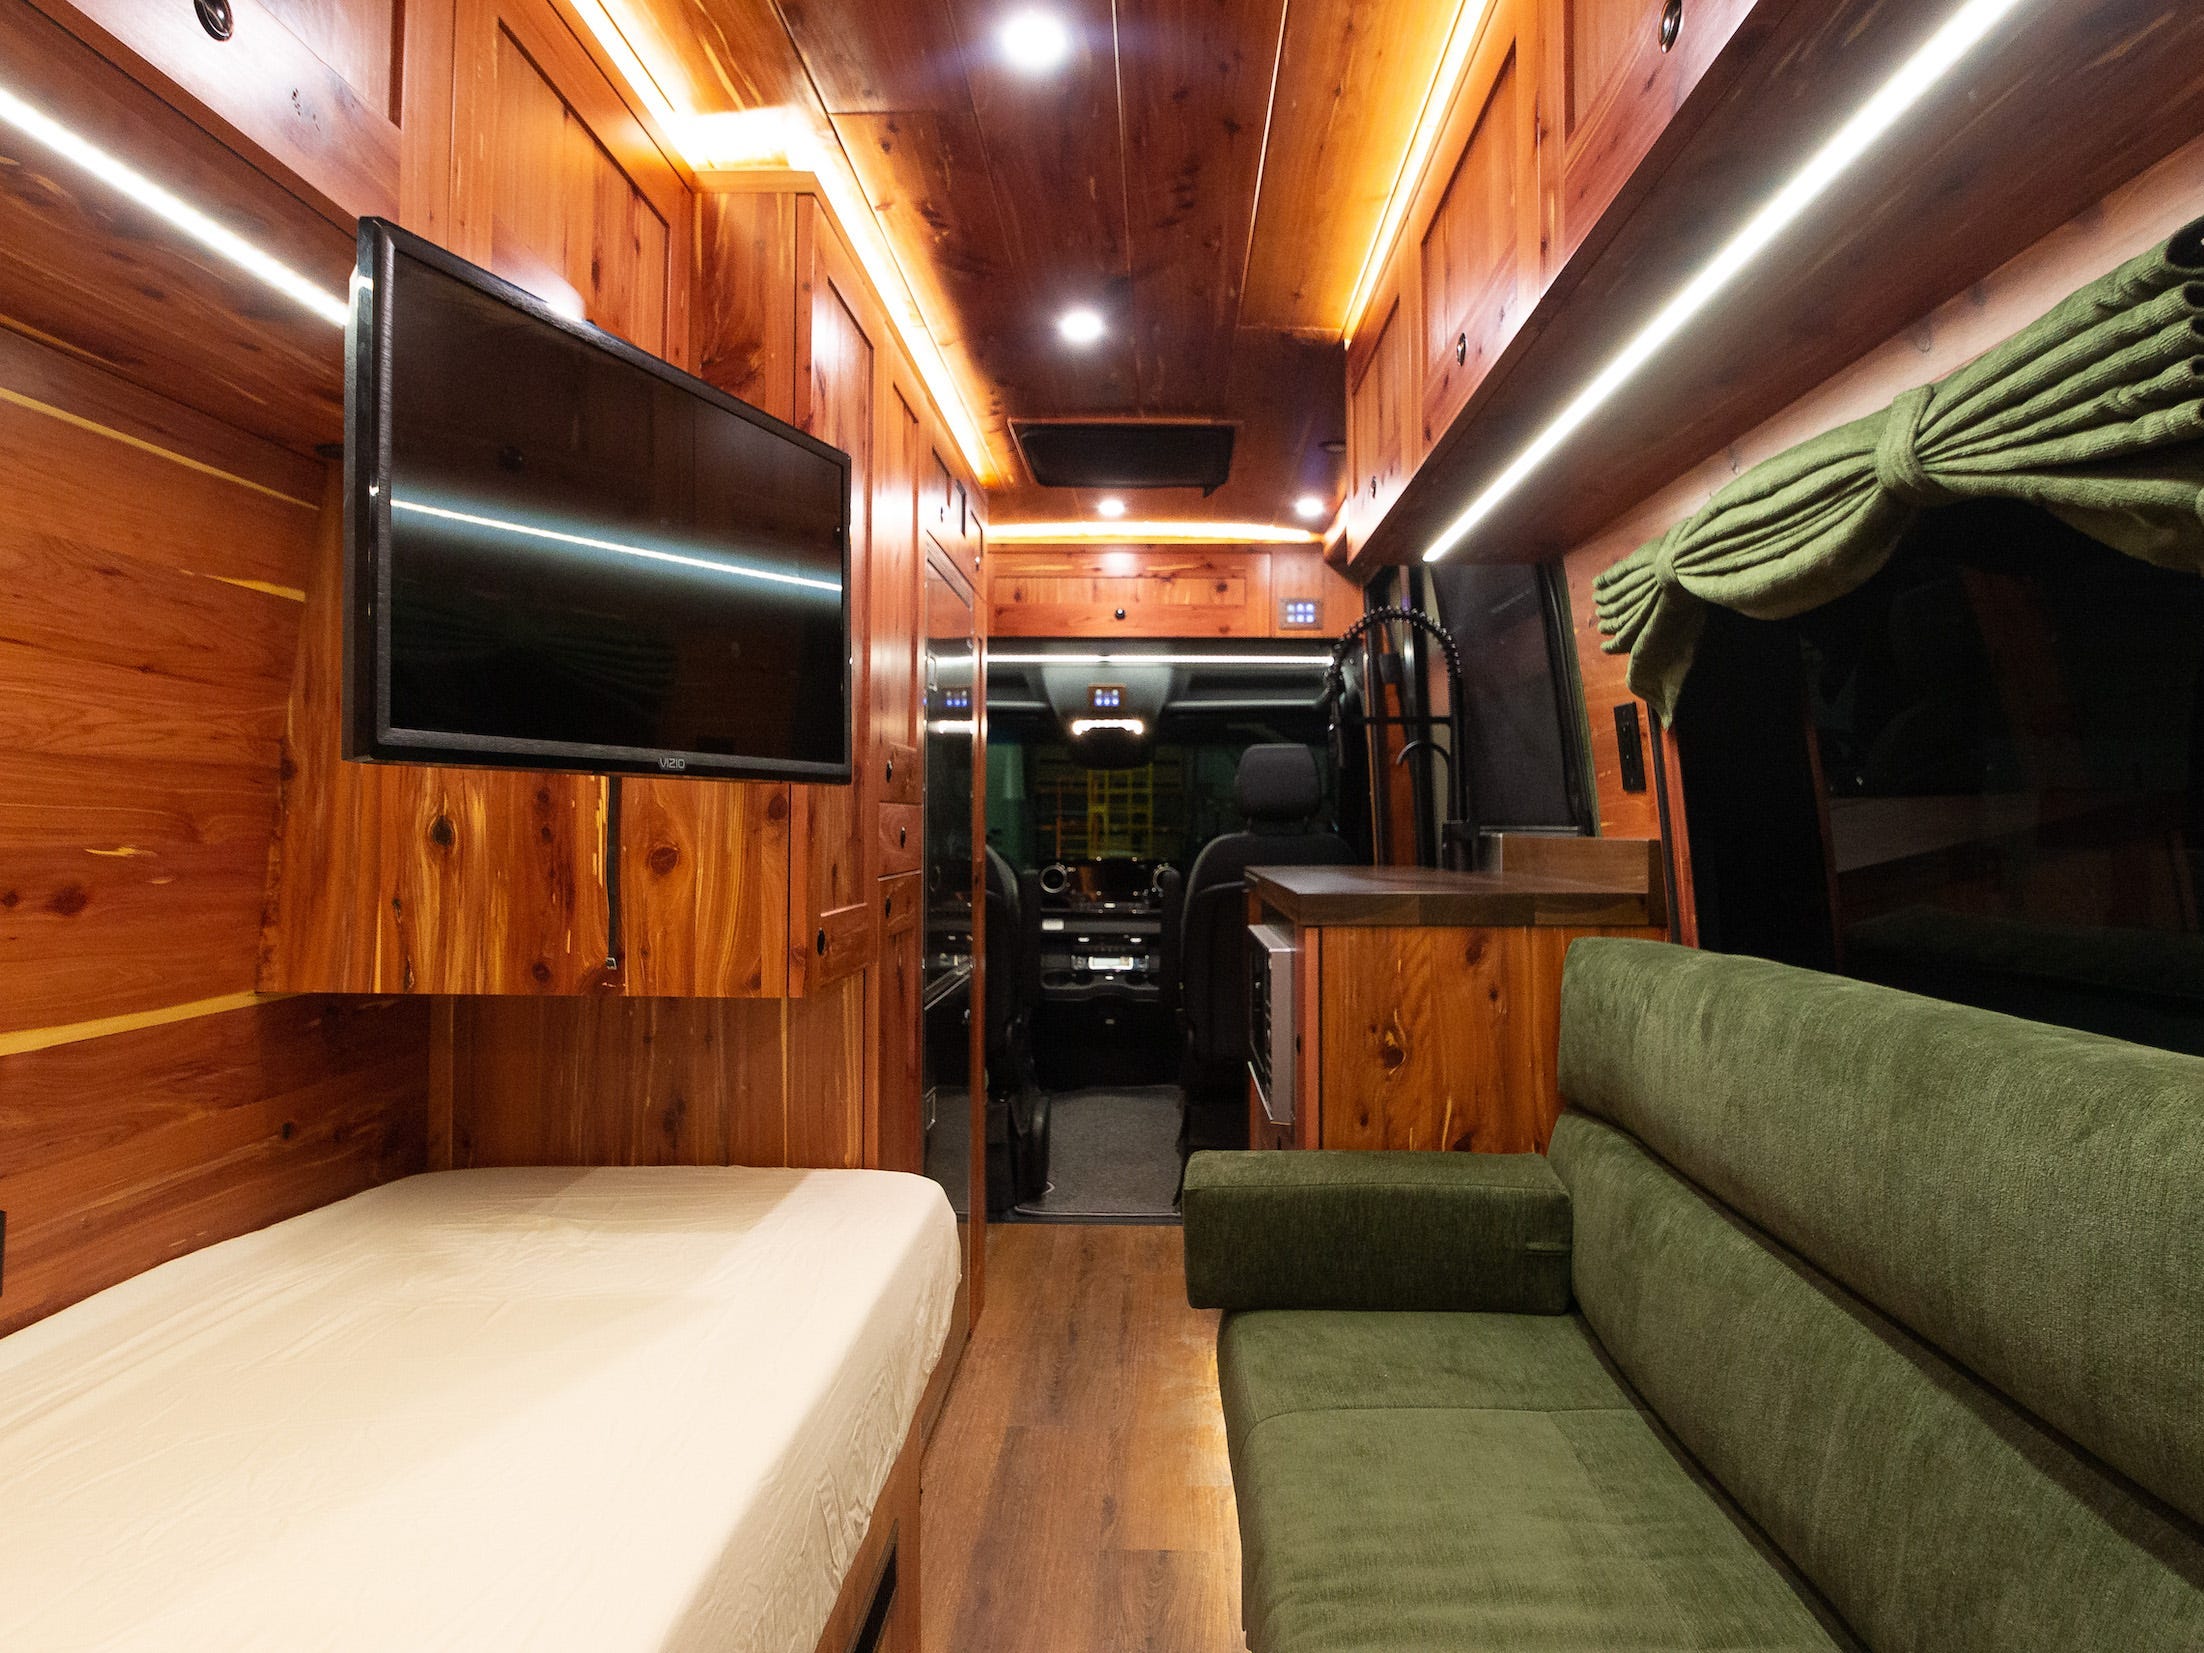 Links ein Bett, rechts eine grüne Couch.  Es gibt einen Fernseher, der von der Decke hängt, und einen Blick durch die Vorderseite des Vans.